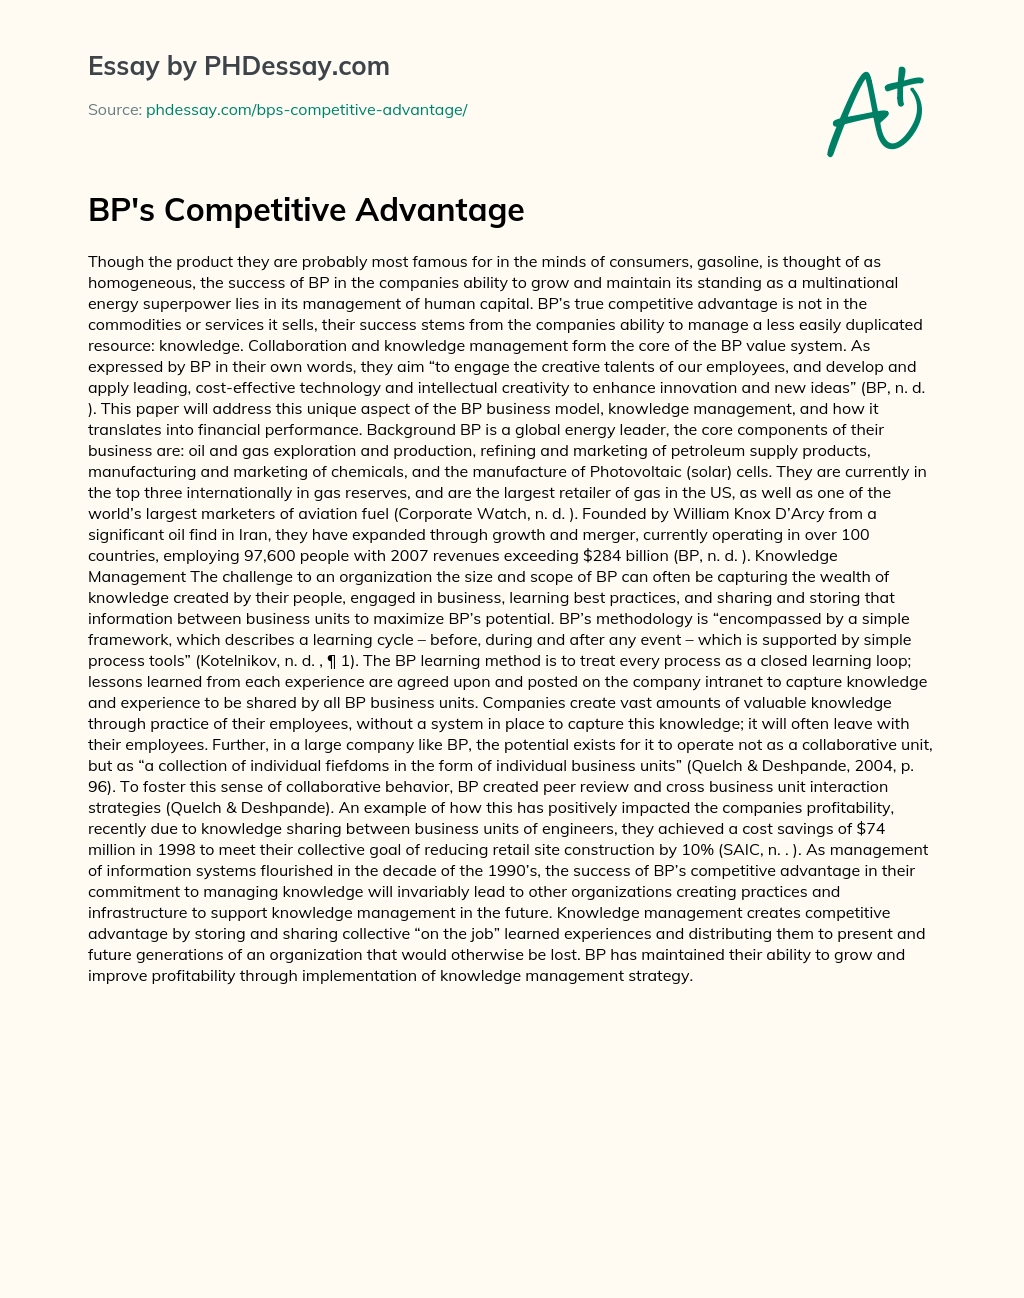 BP’s Competitive Advantage essay